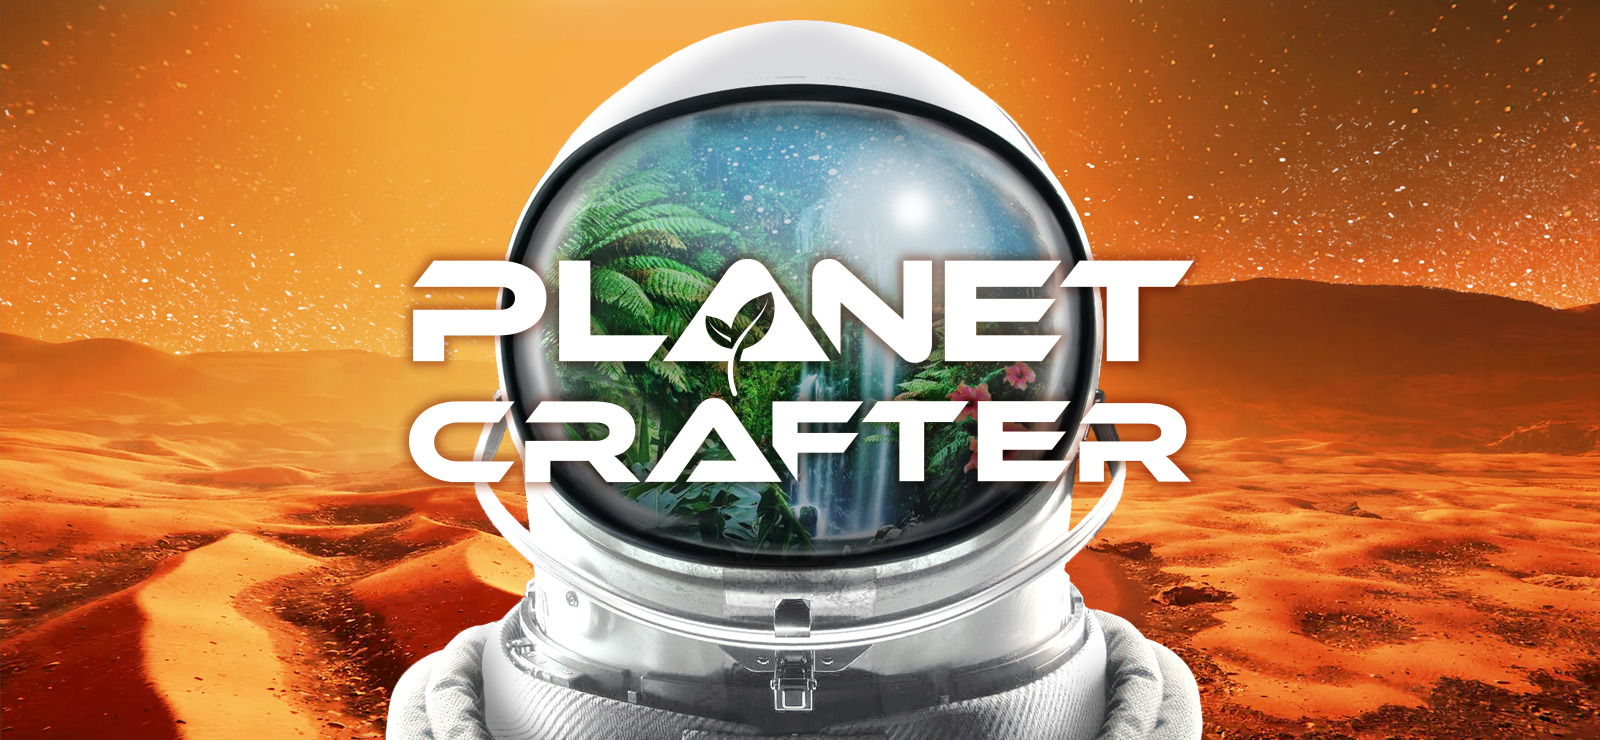 #5 The Planet Crafter | кооп | грабим заброшенные корабли - разводим и перерабатываем бабочек